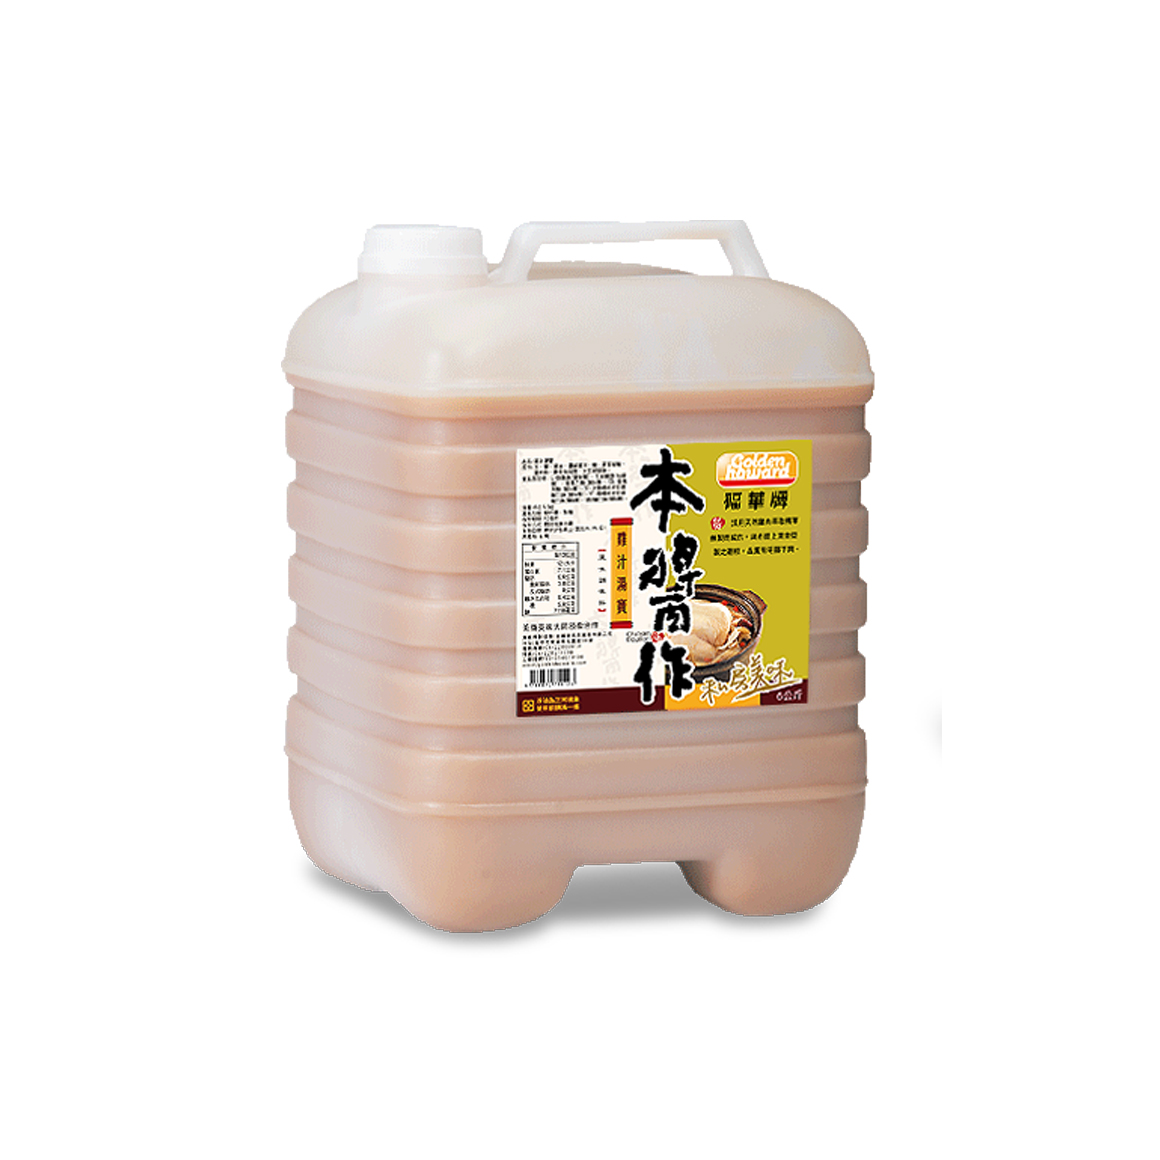 20200727-B009-13福華牌雞汁湯寶6kg-塑膠桶-官網1160x1160